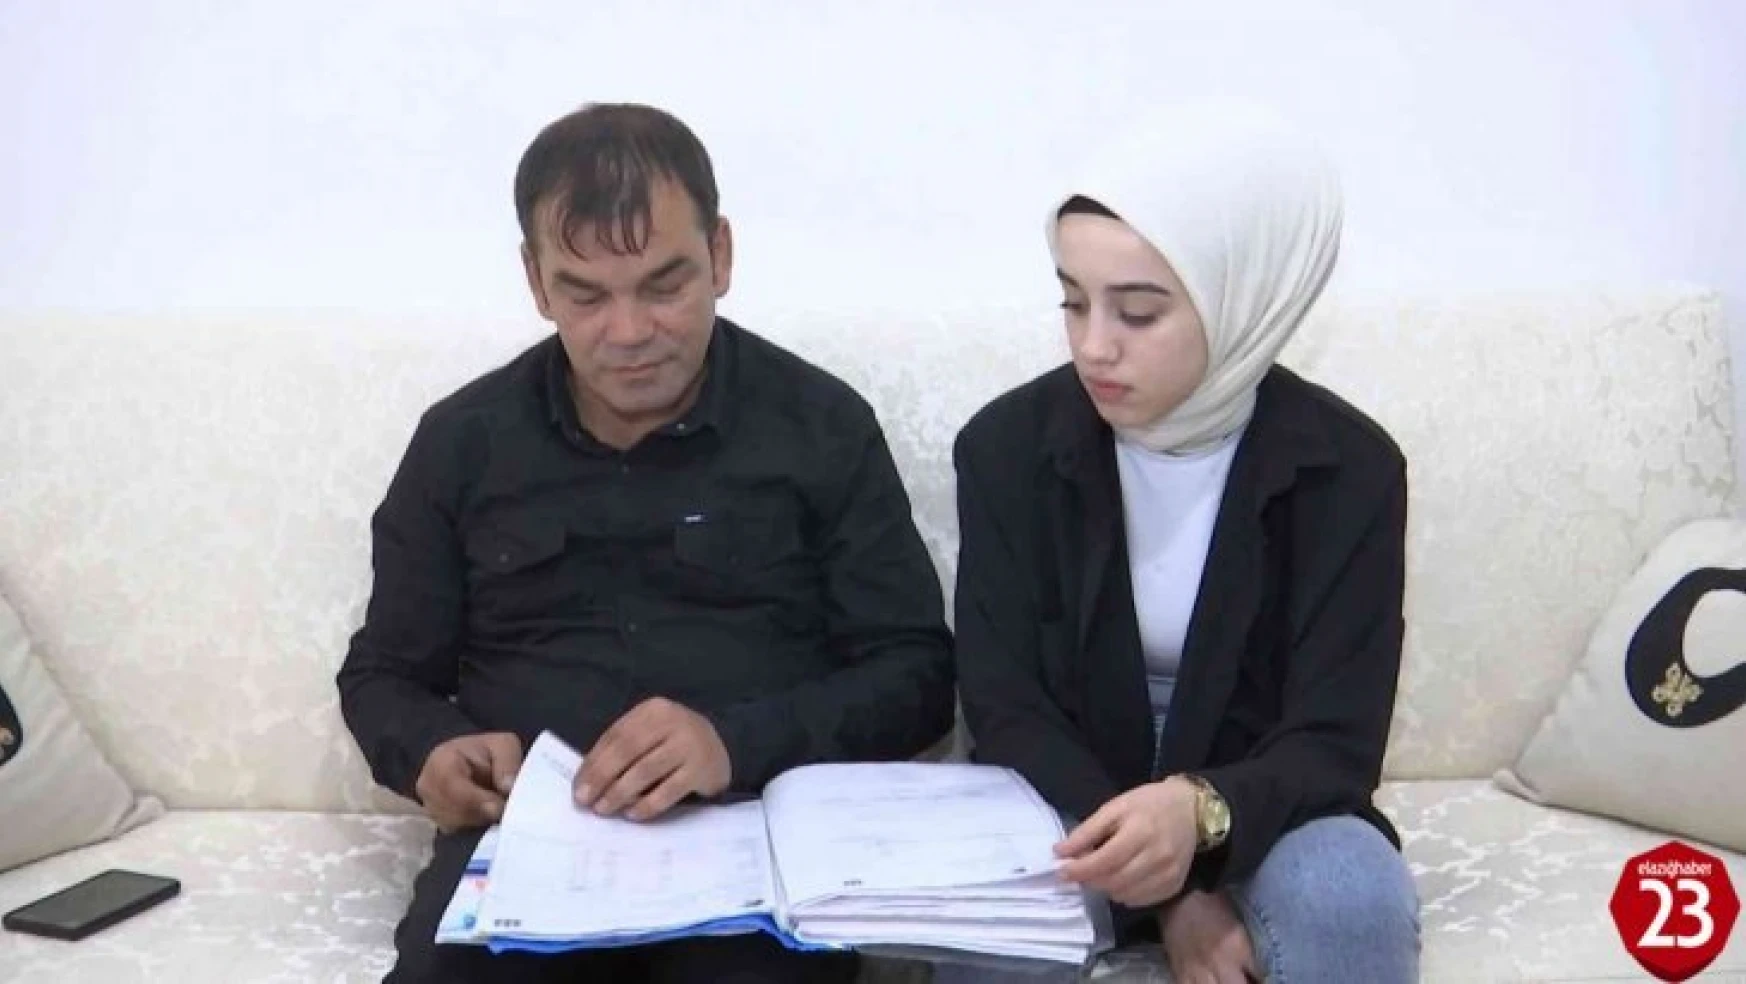 Elazığ'da Yaşayan ve Hastalığıyla Dünya'da 13'ncü Vakan Olan Genç Kız Yardım Bekliyor